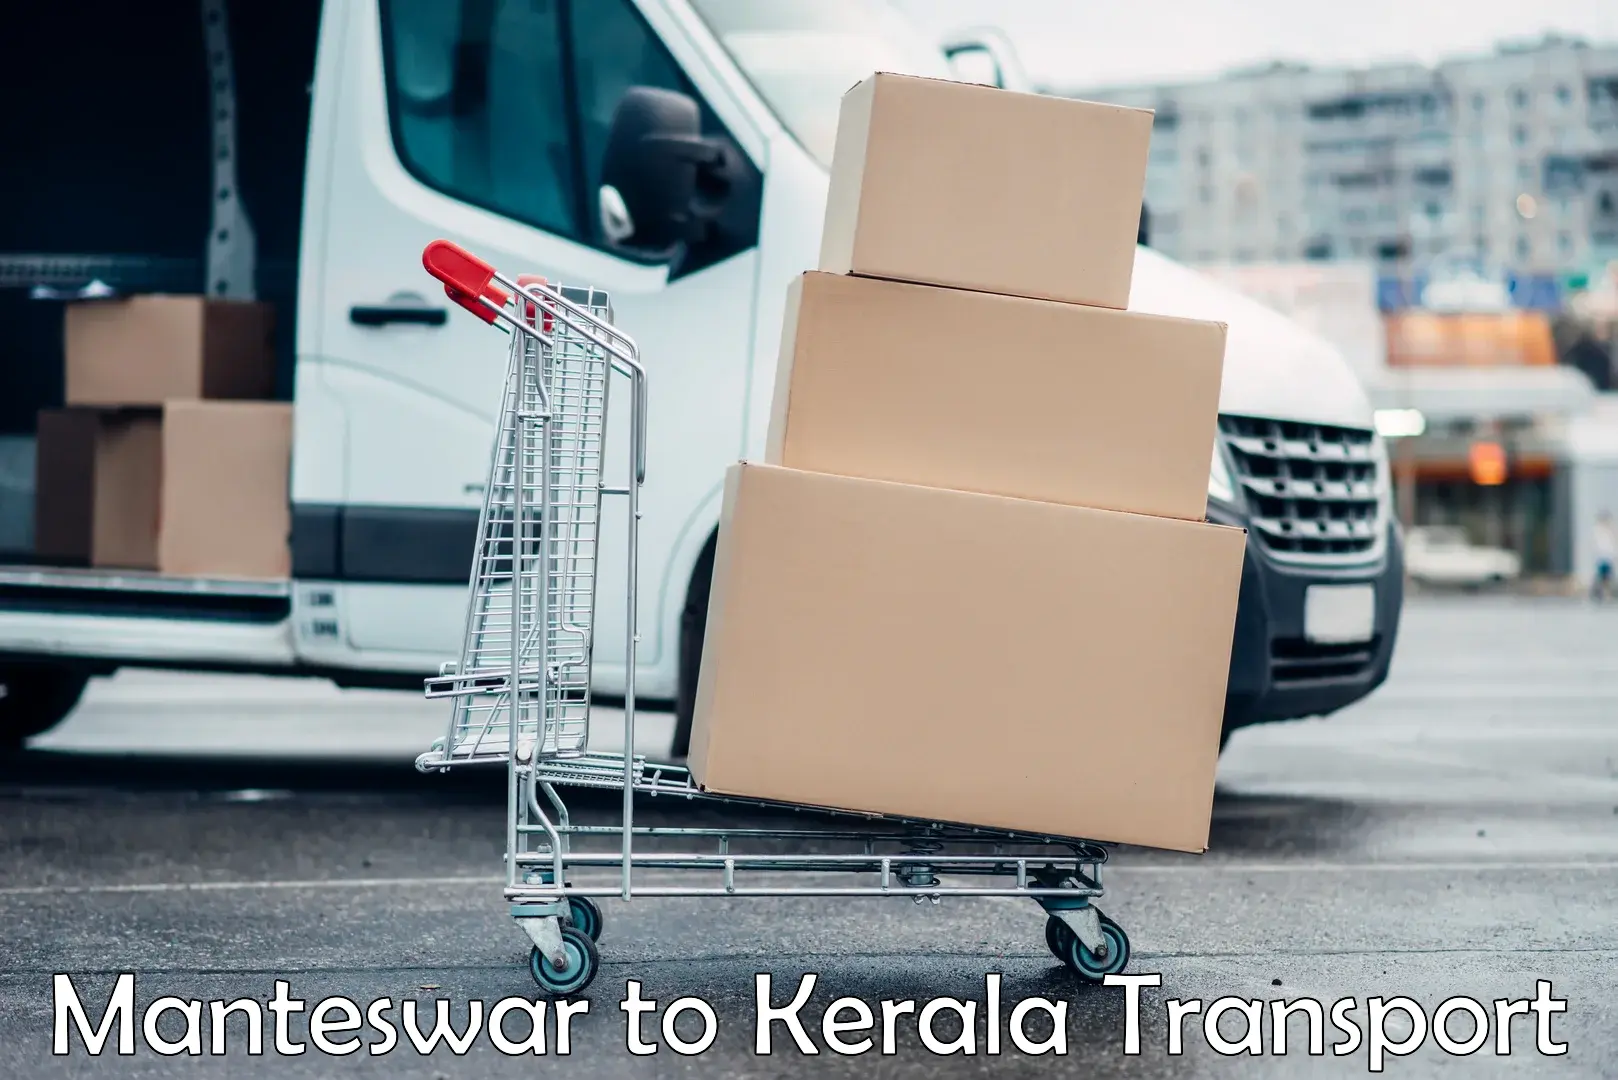 Land transport services Manteswar to Kerala